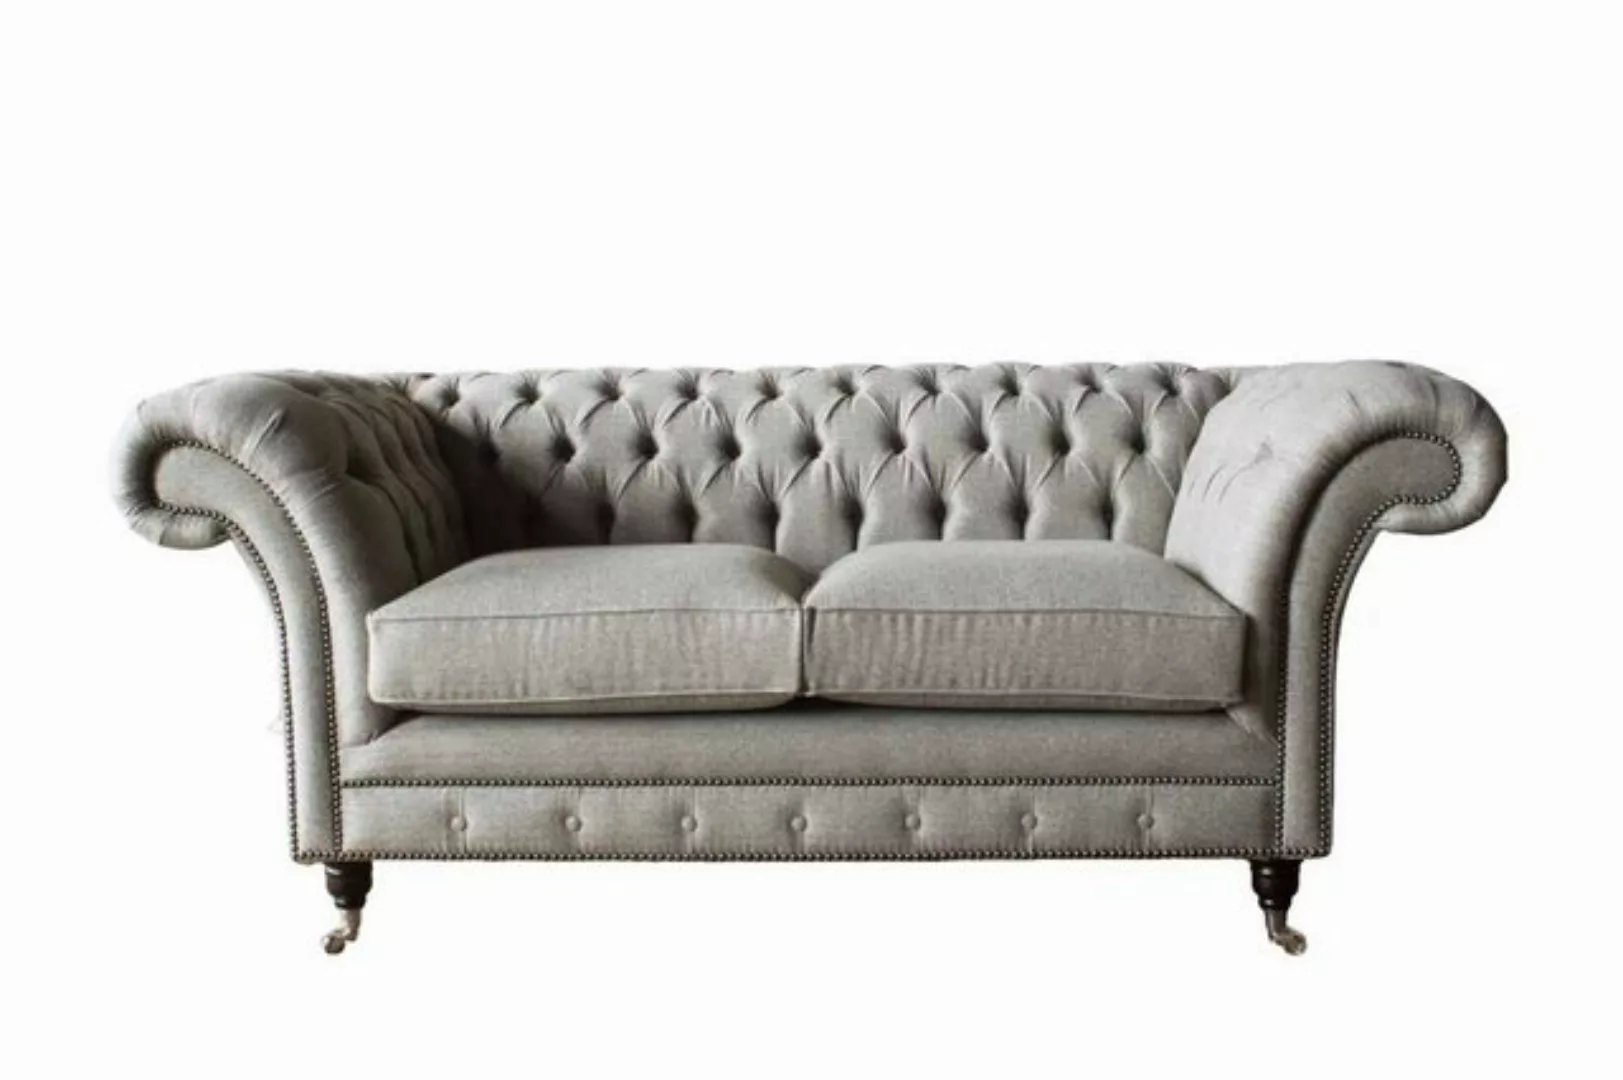 JVmoebel Sofa Chesterfield Grau Sofa 2 Sitz Couch Holz Möbel Couchen Neu, M günstig online kaufen